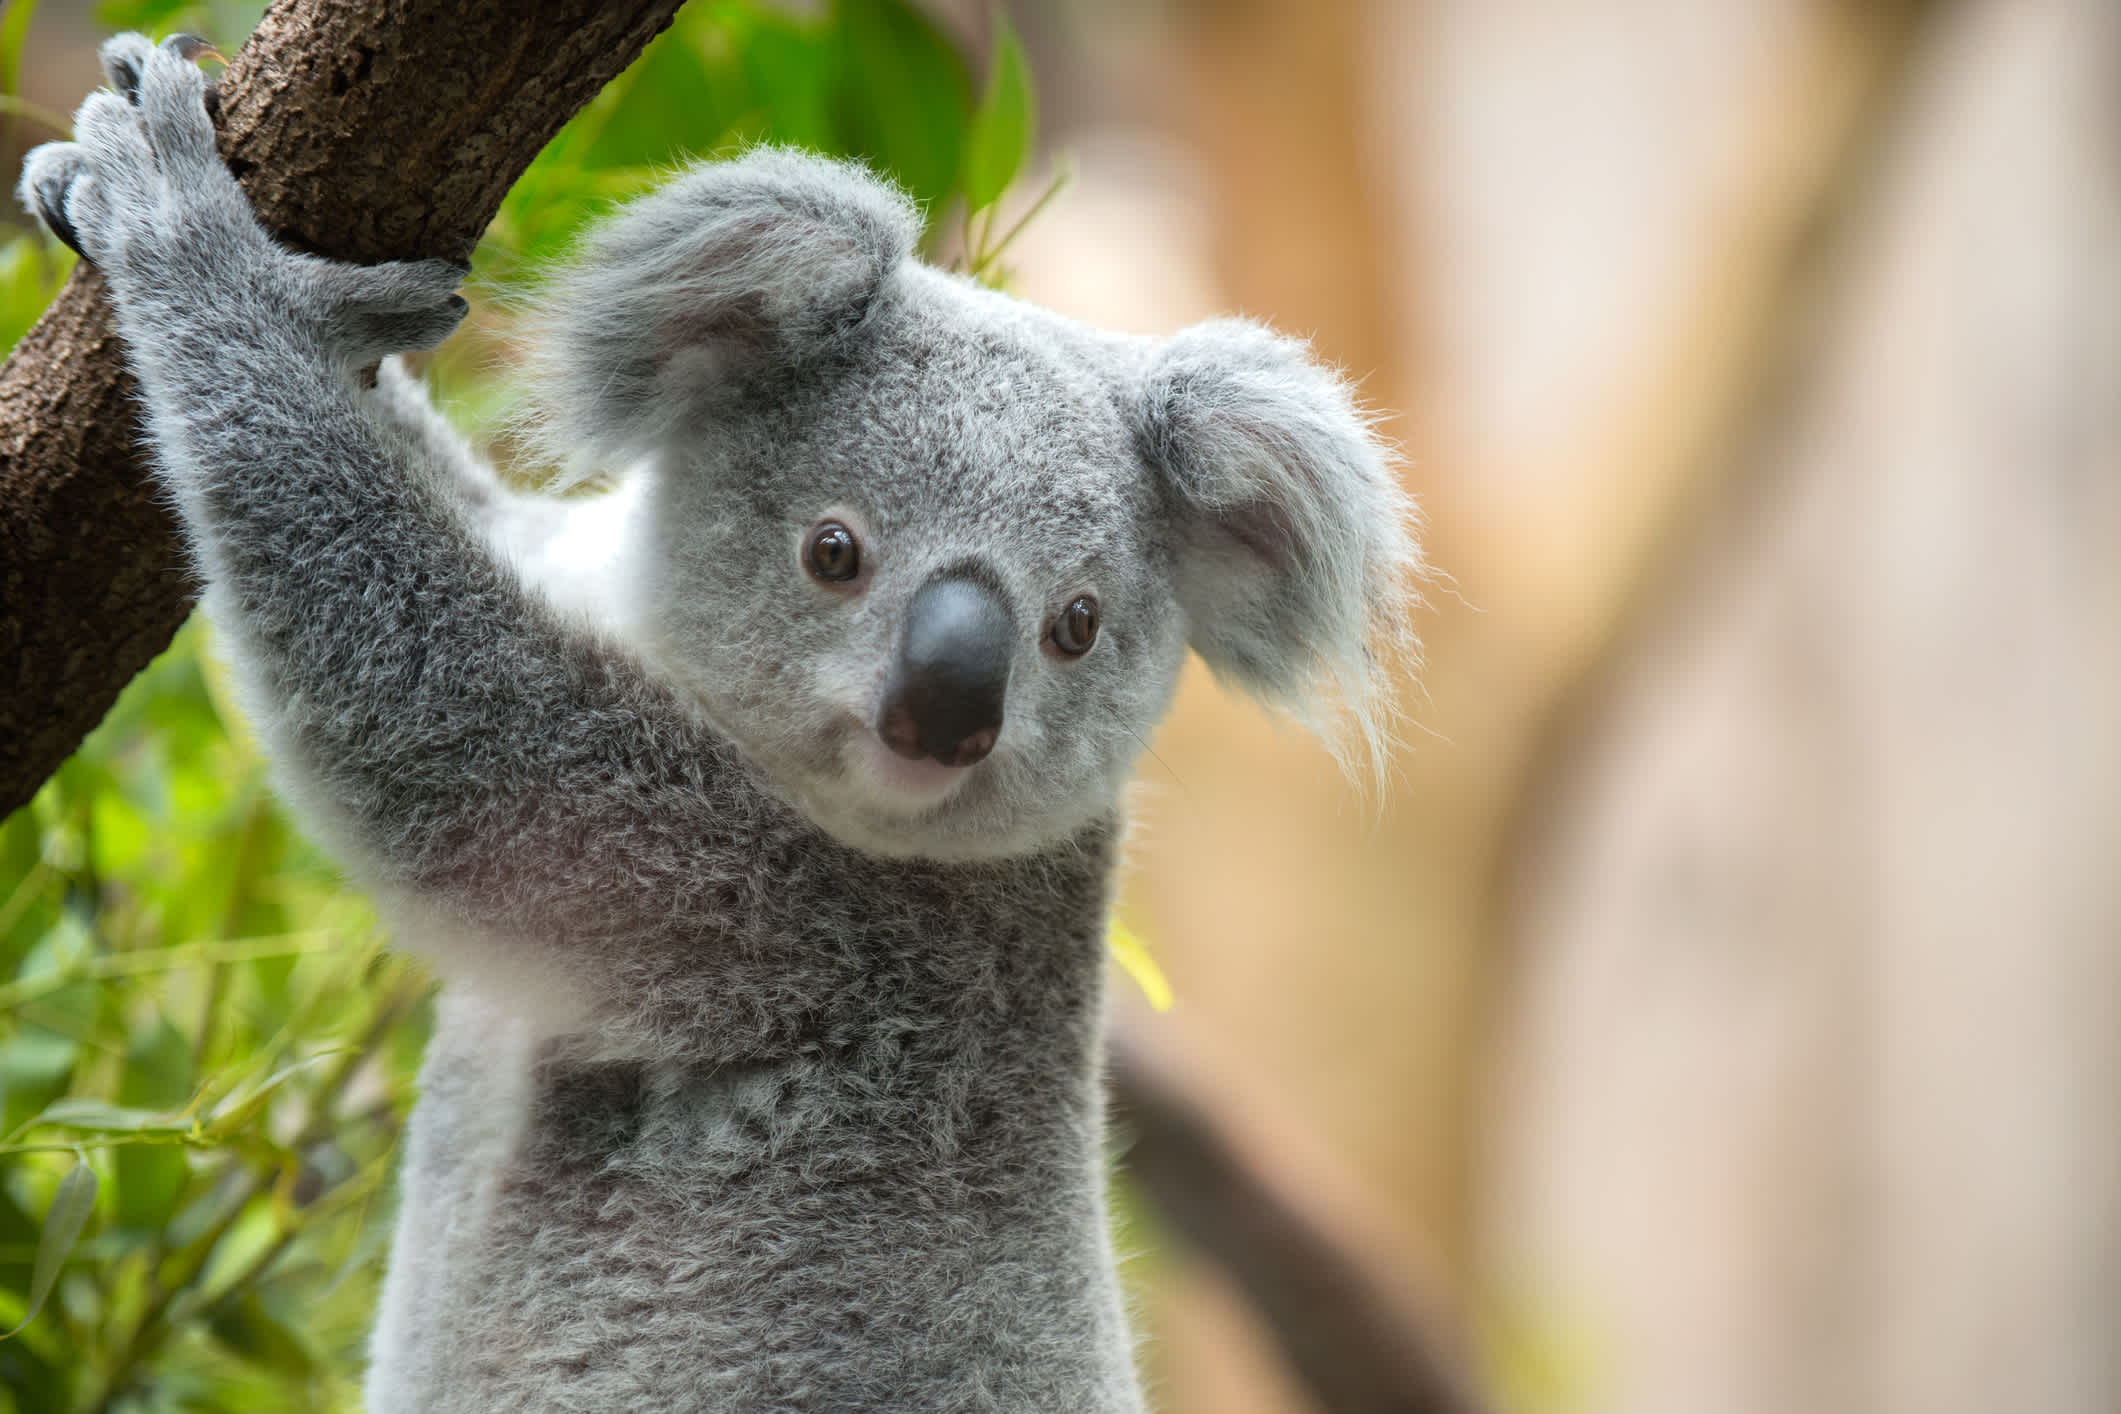 Koala-Bär auf einem Baum, Australien.
